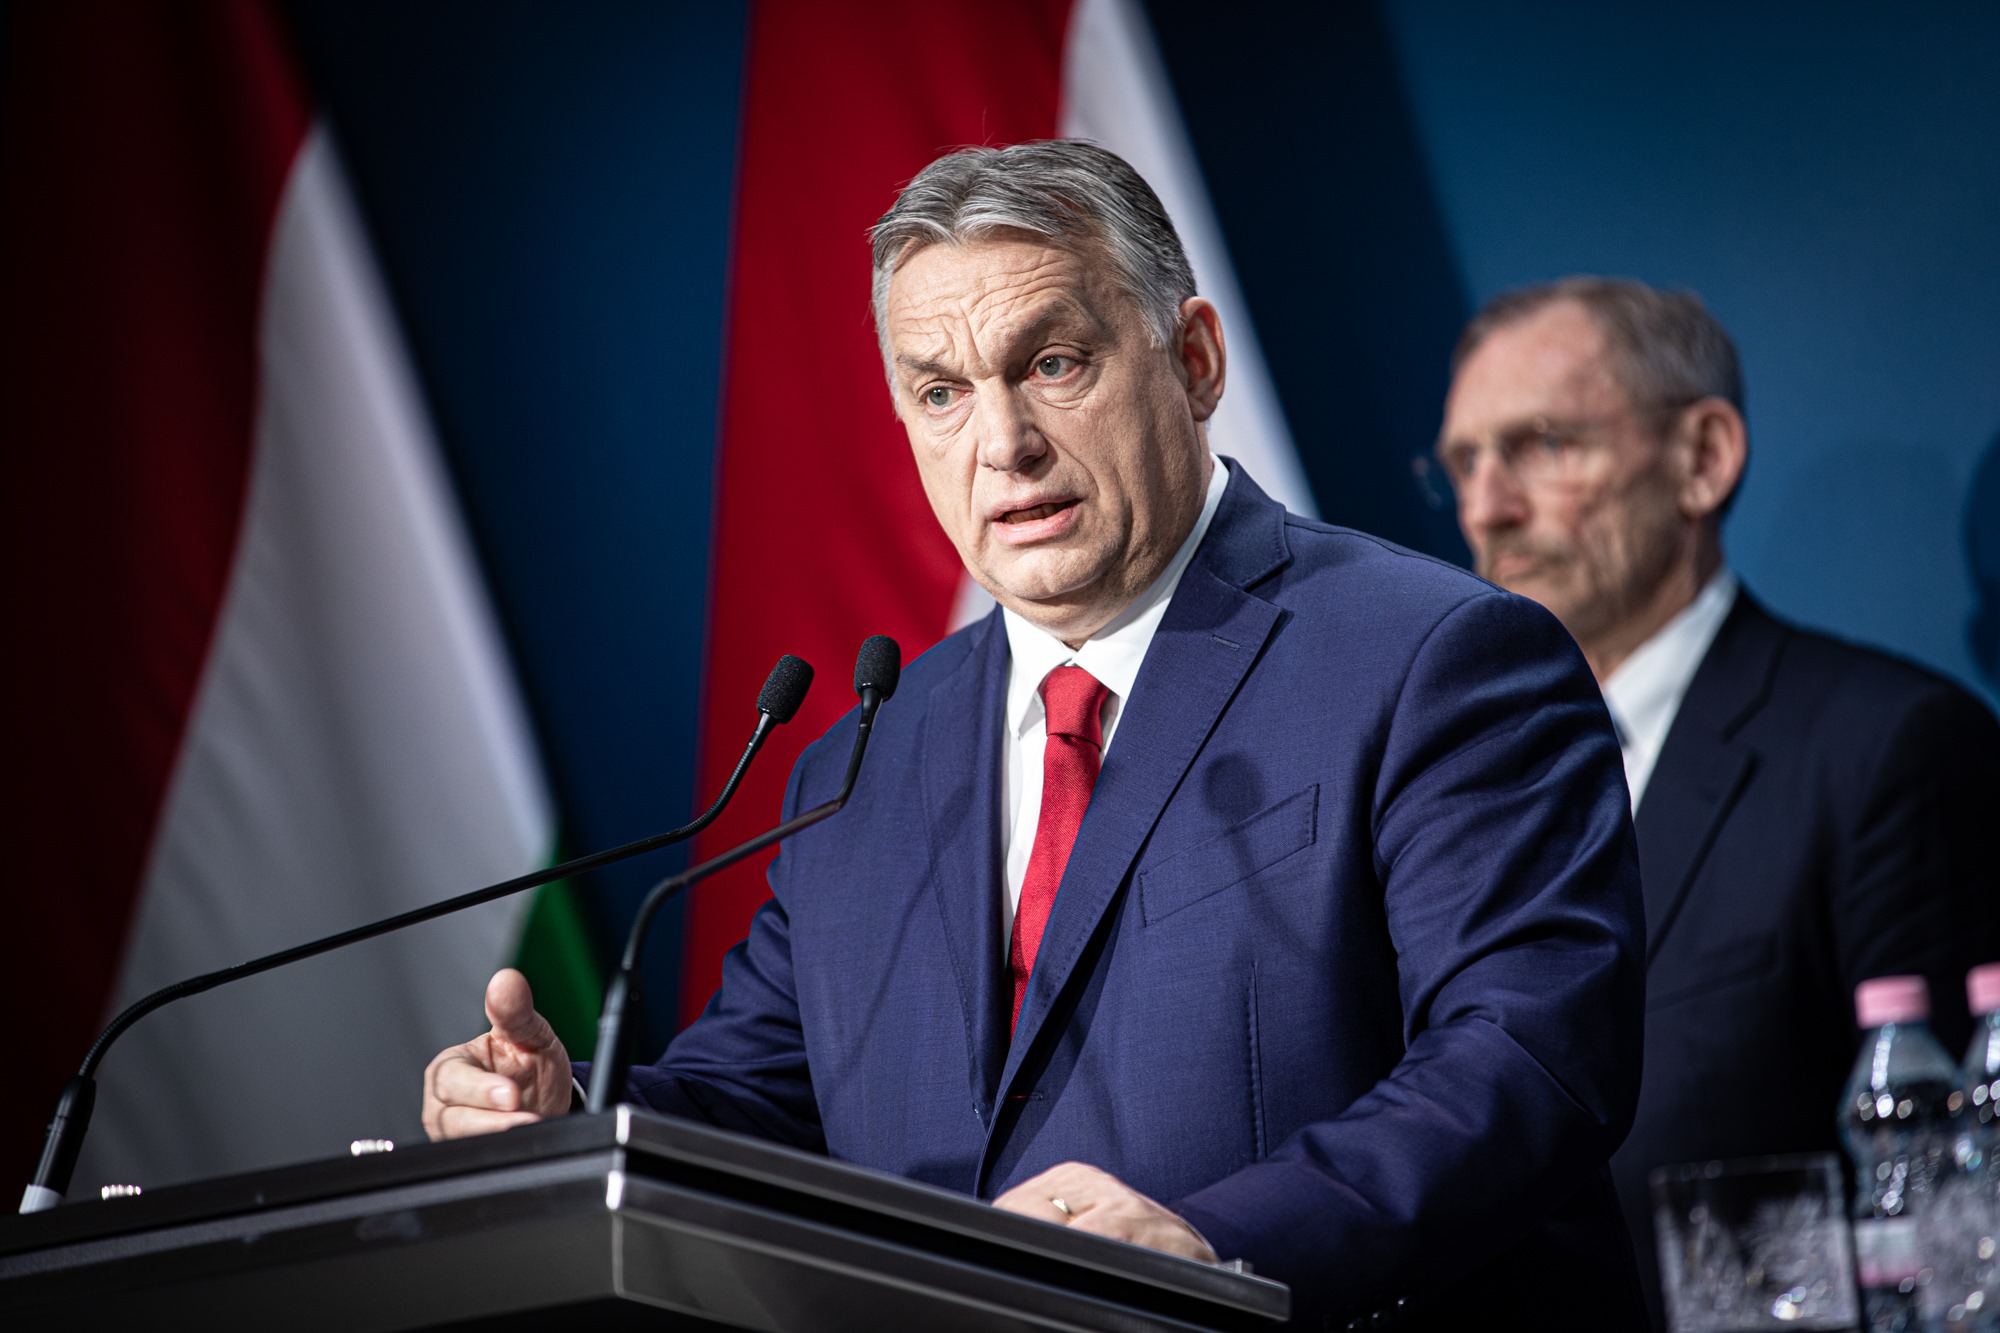 orbán speech serious